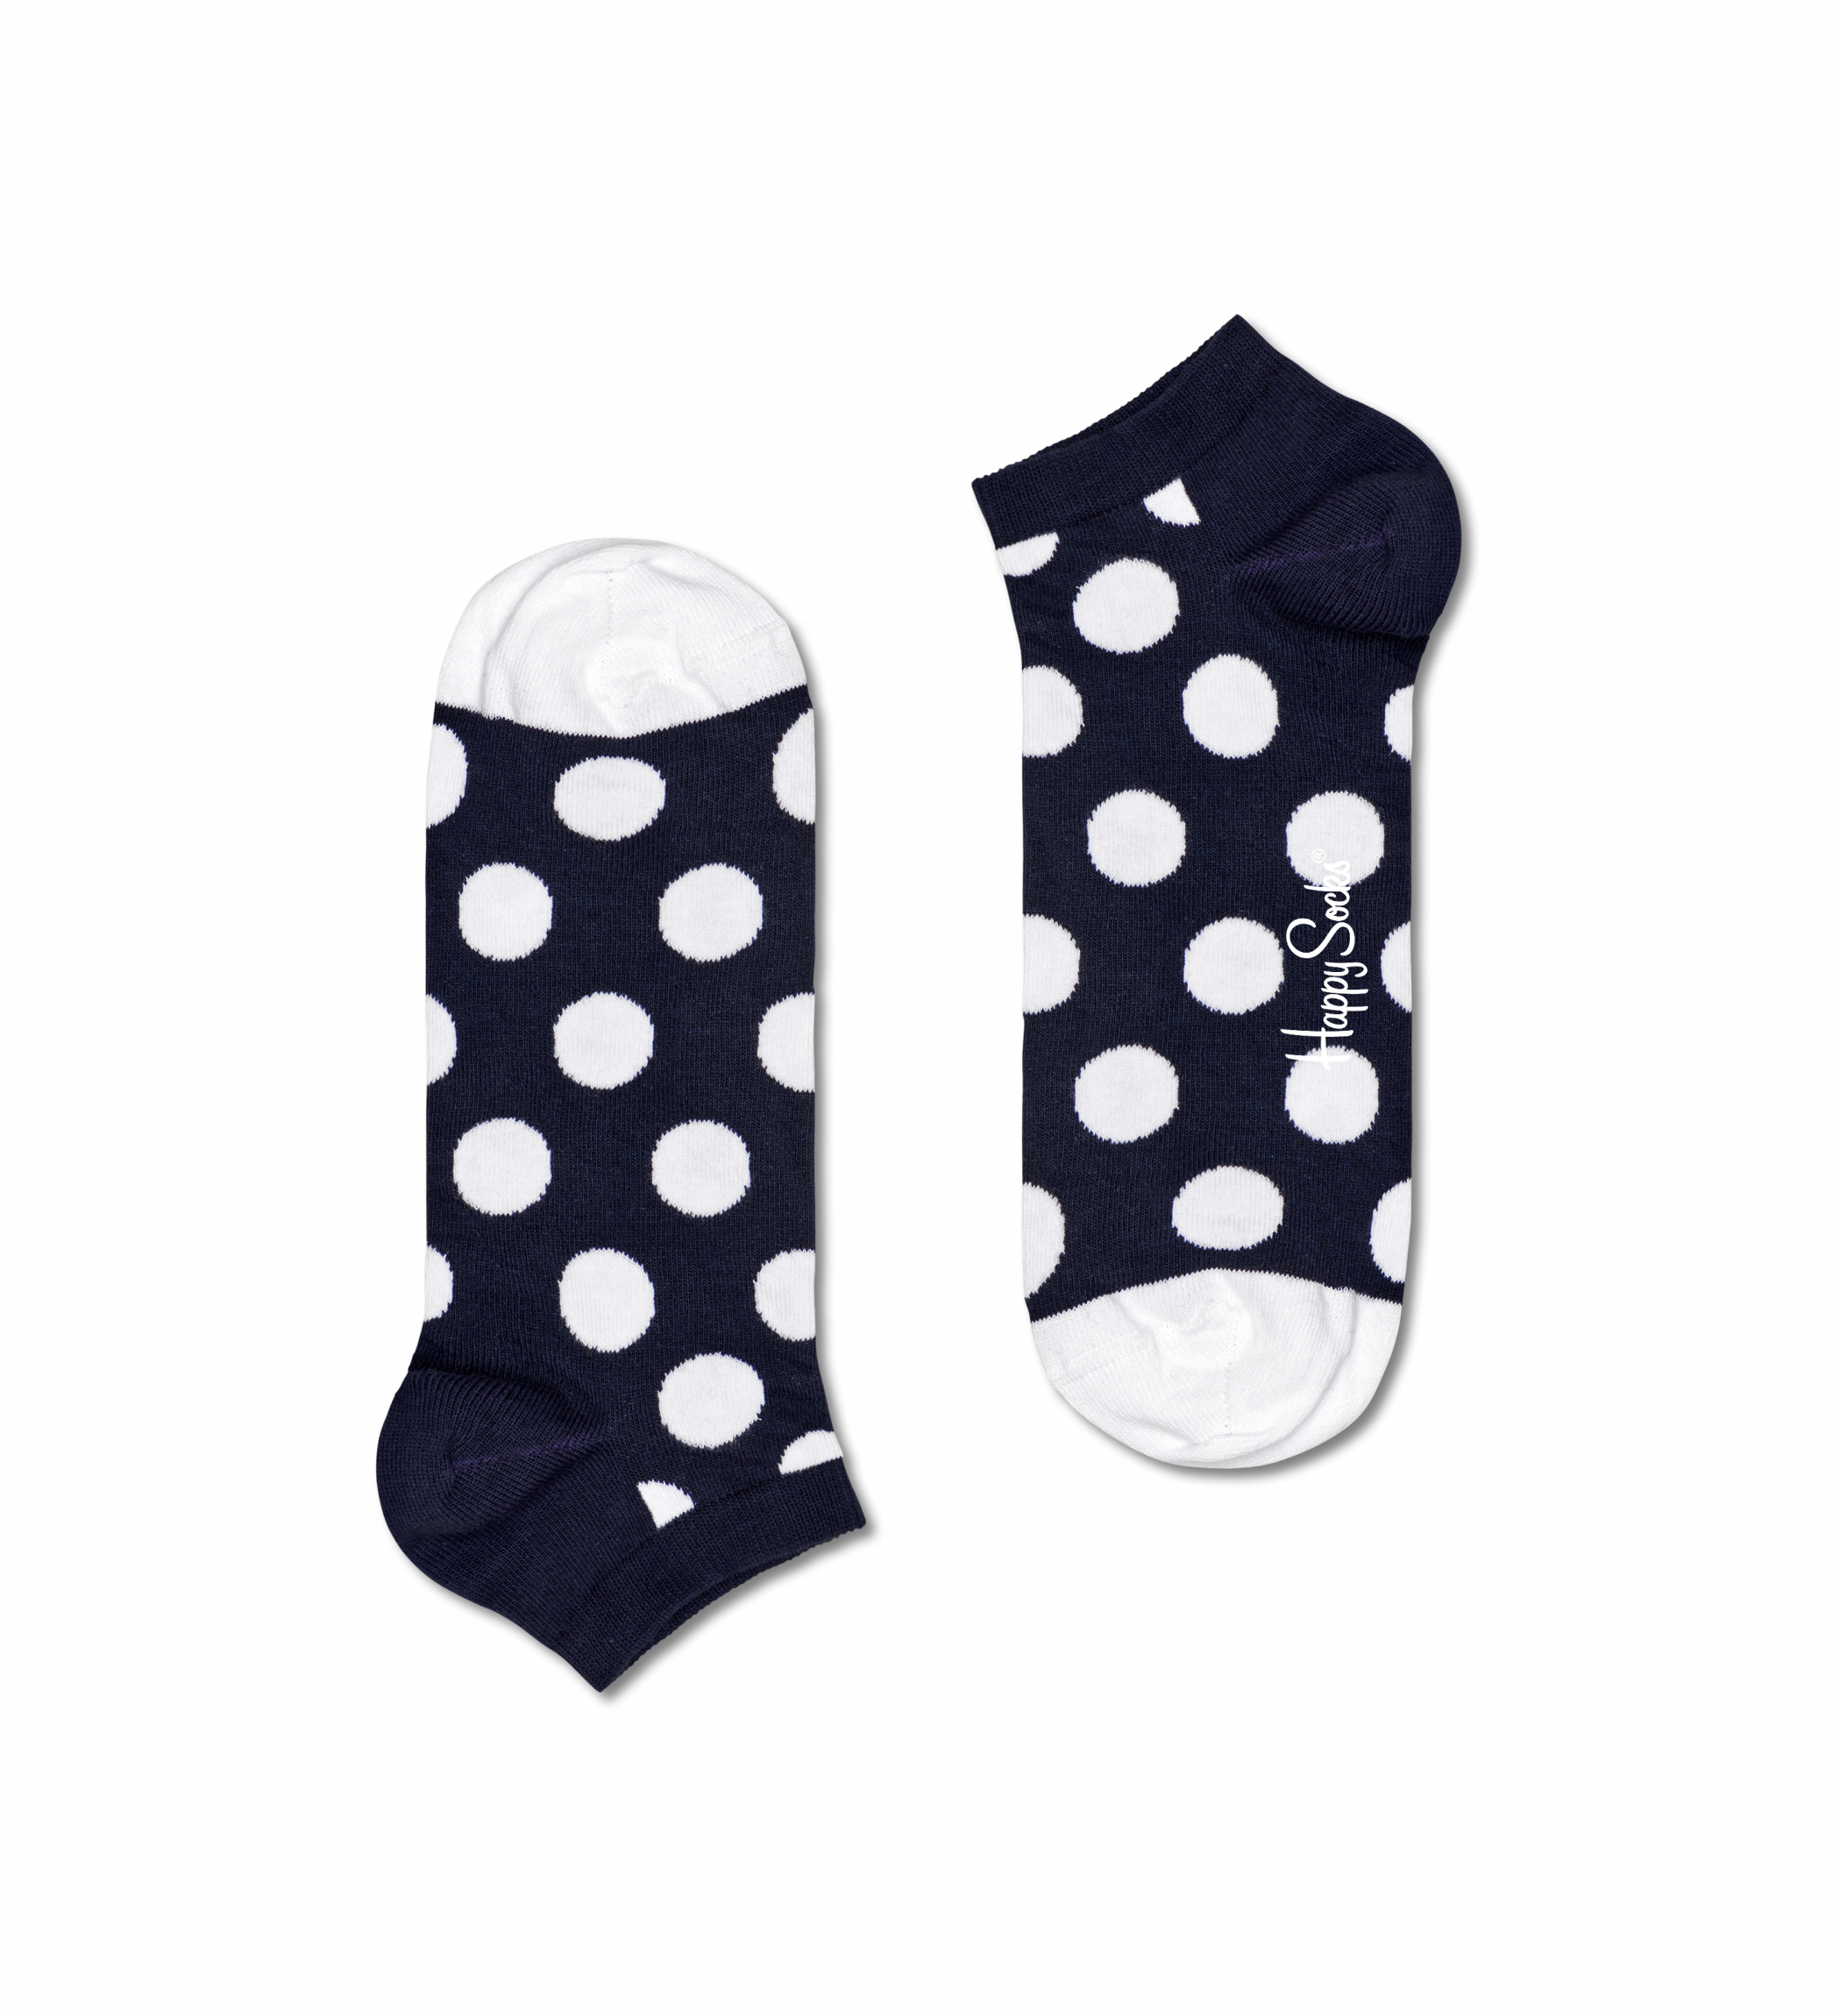 Modré nízké ponožky Happy Socks s puntíky, vzor Big Dot